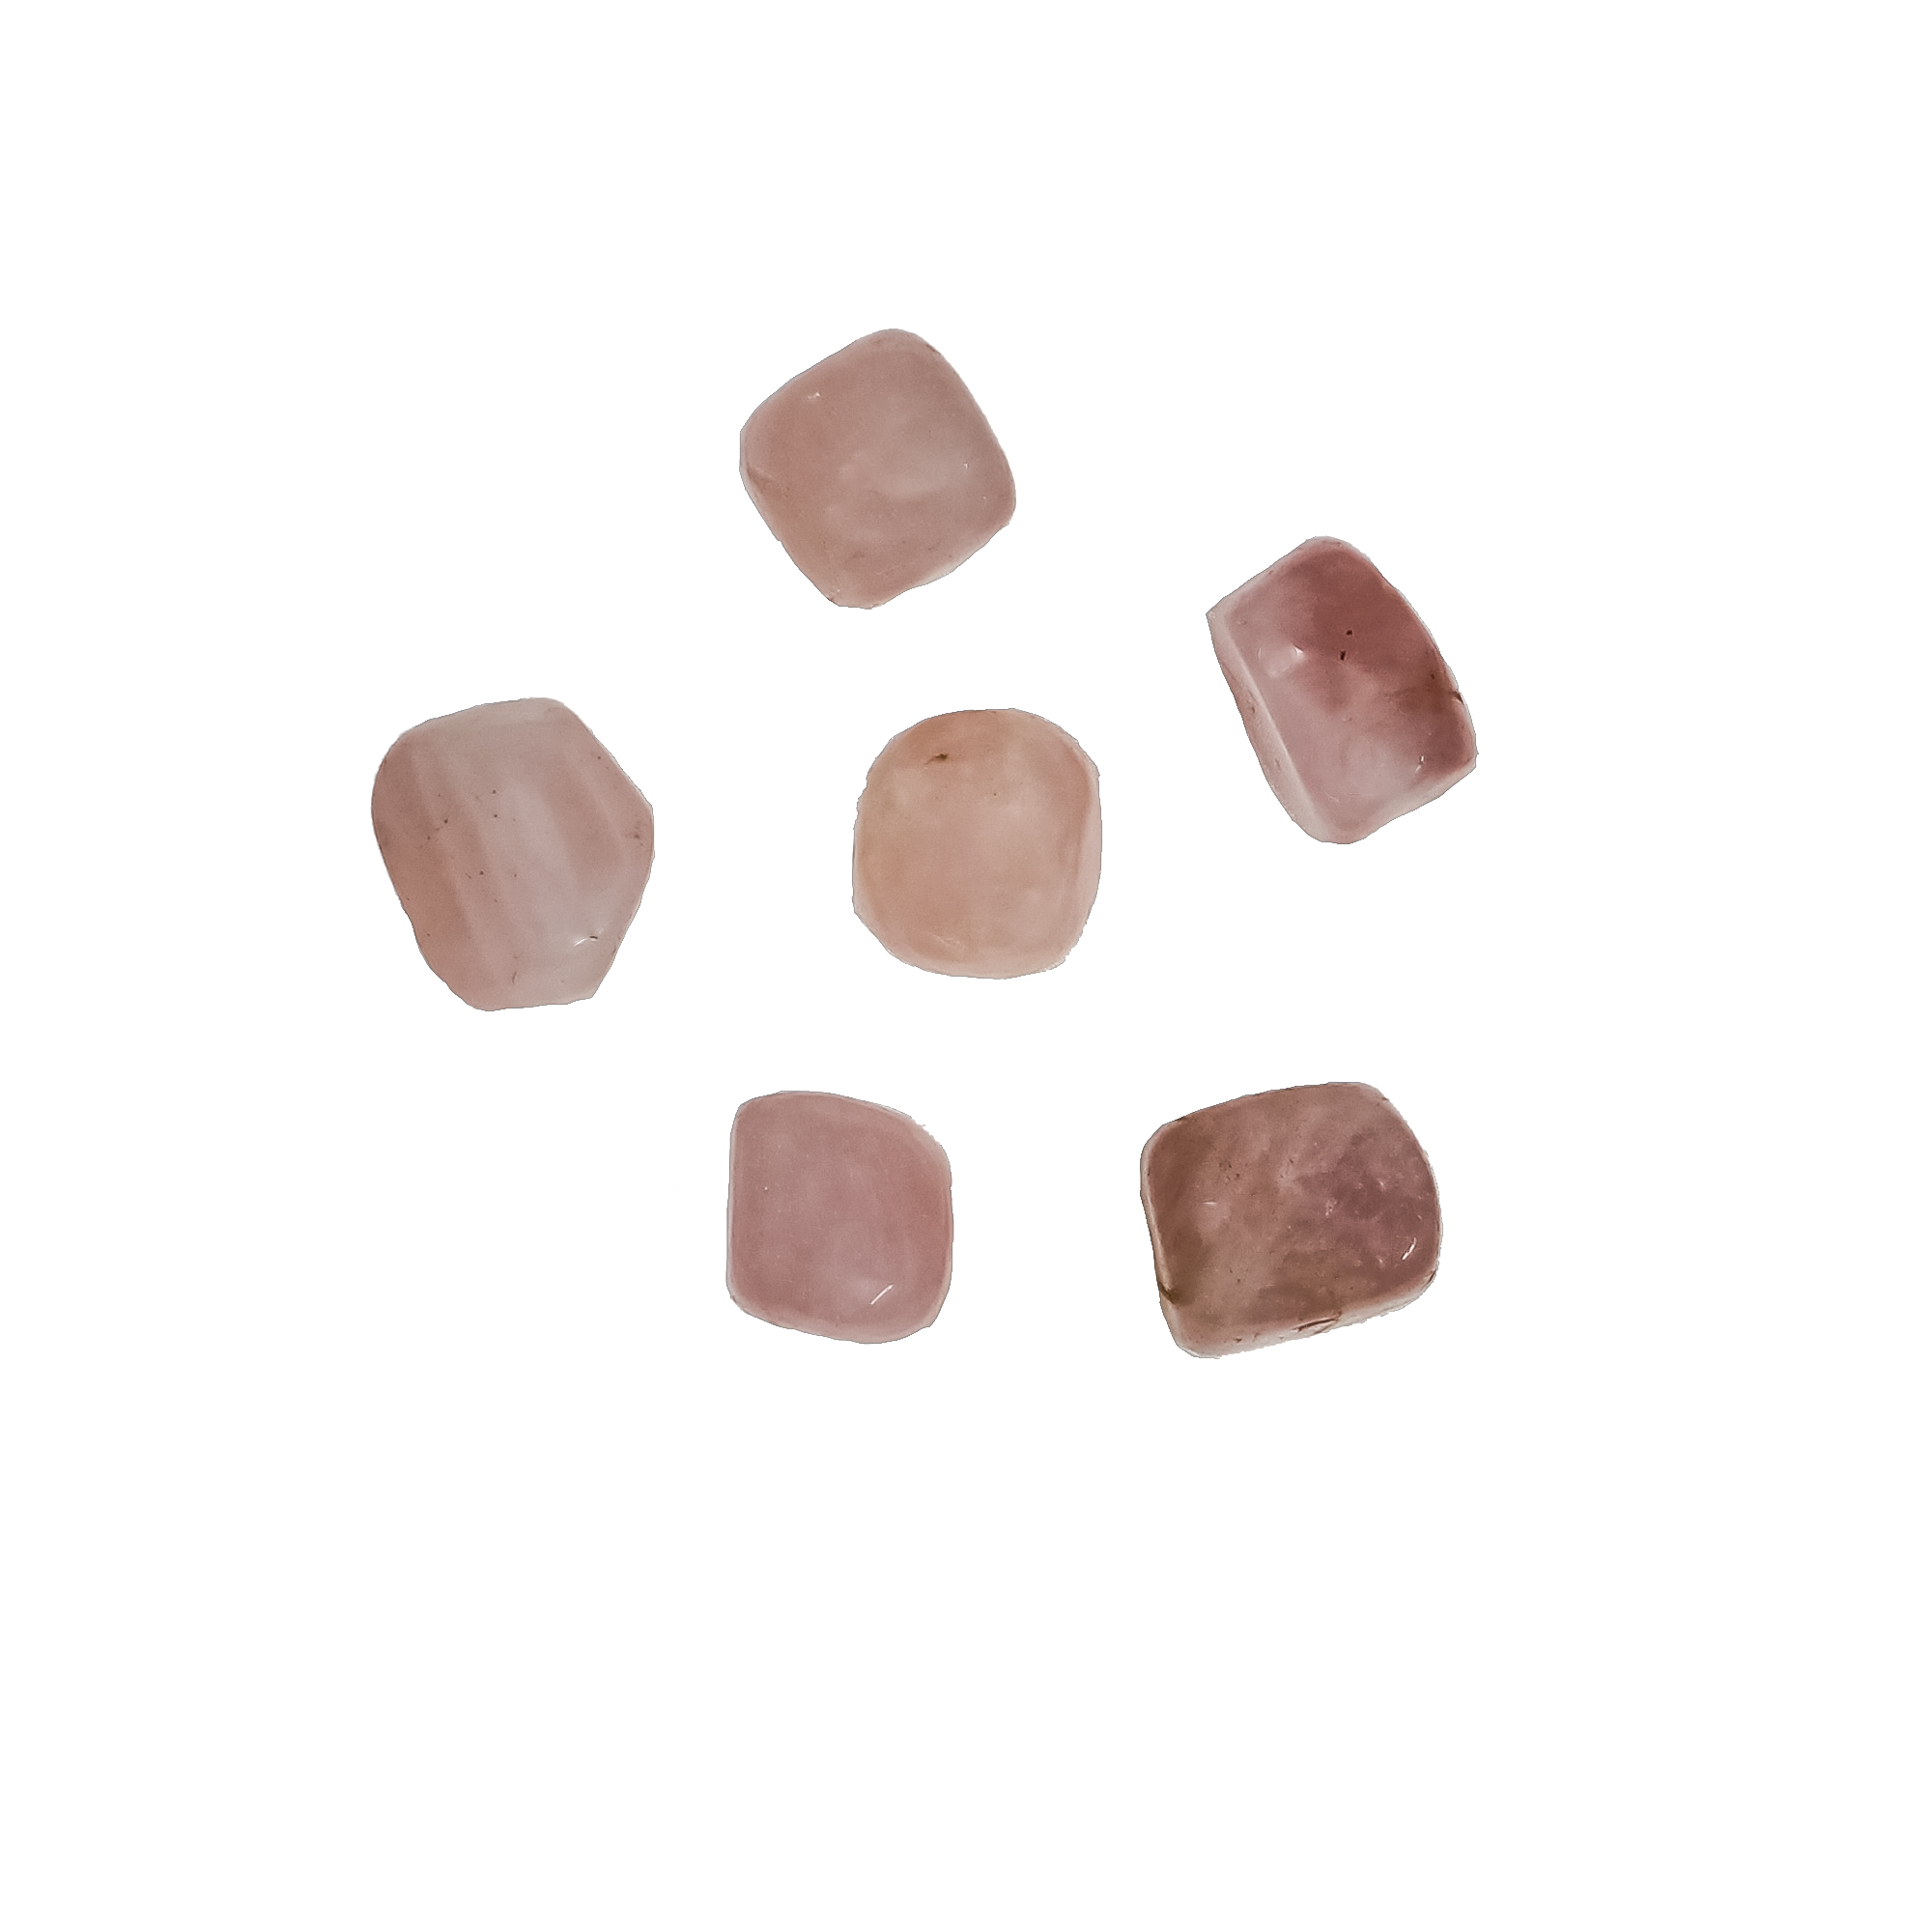 Natural Rose Quartz Tumble Stone Hand-Polished